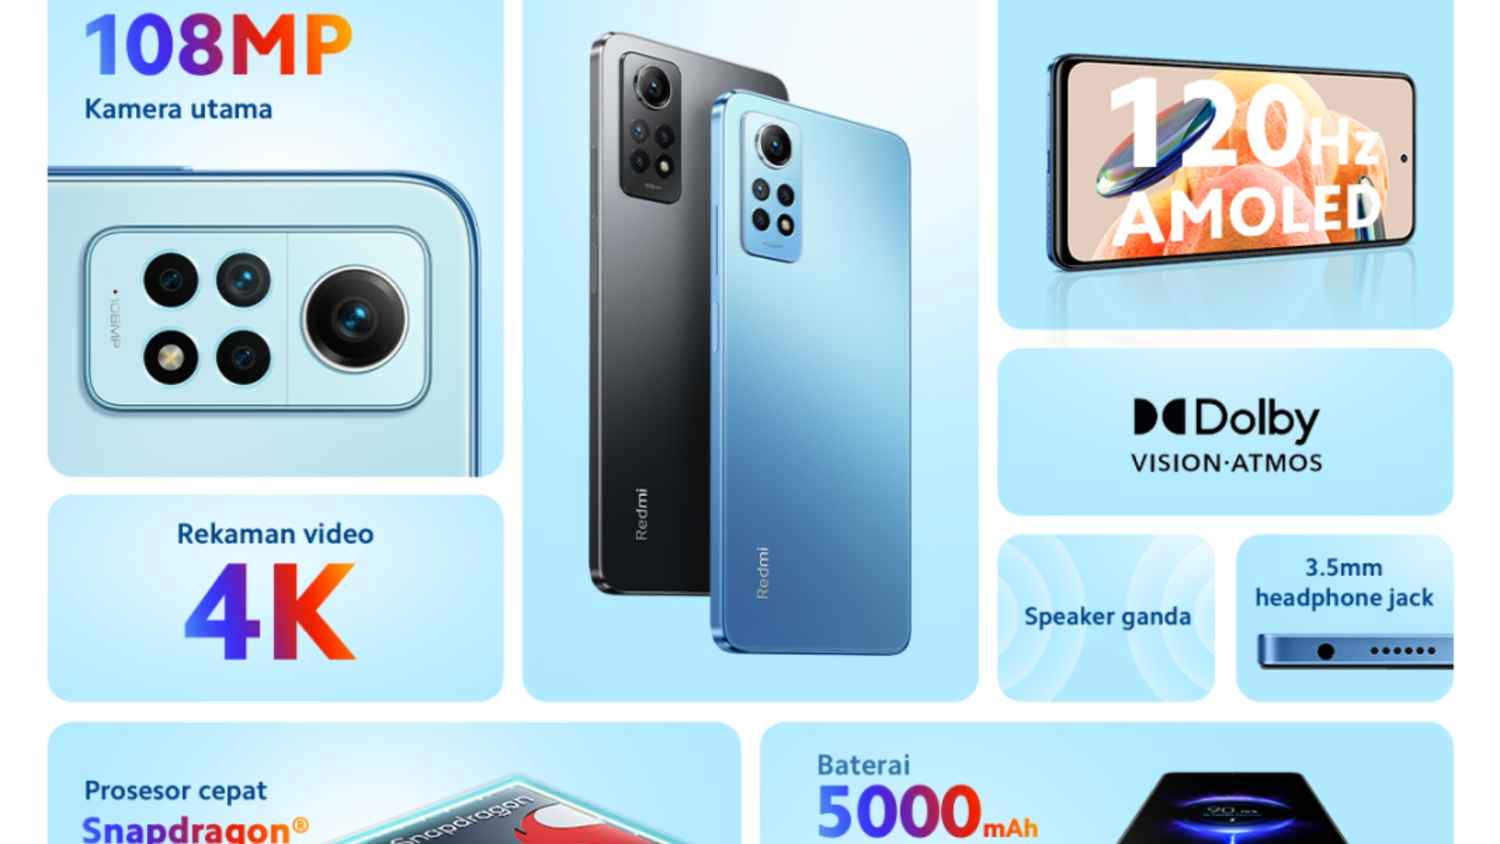 Redmi Note 12 लाइनअप में नया-नवेला फोन, 4G के साथ ये टॉप 5 फीचर बनाते हैं खास